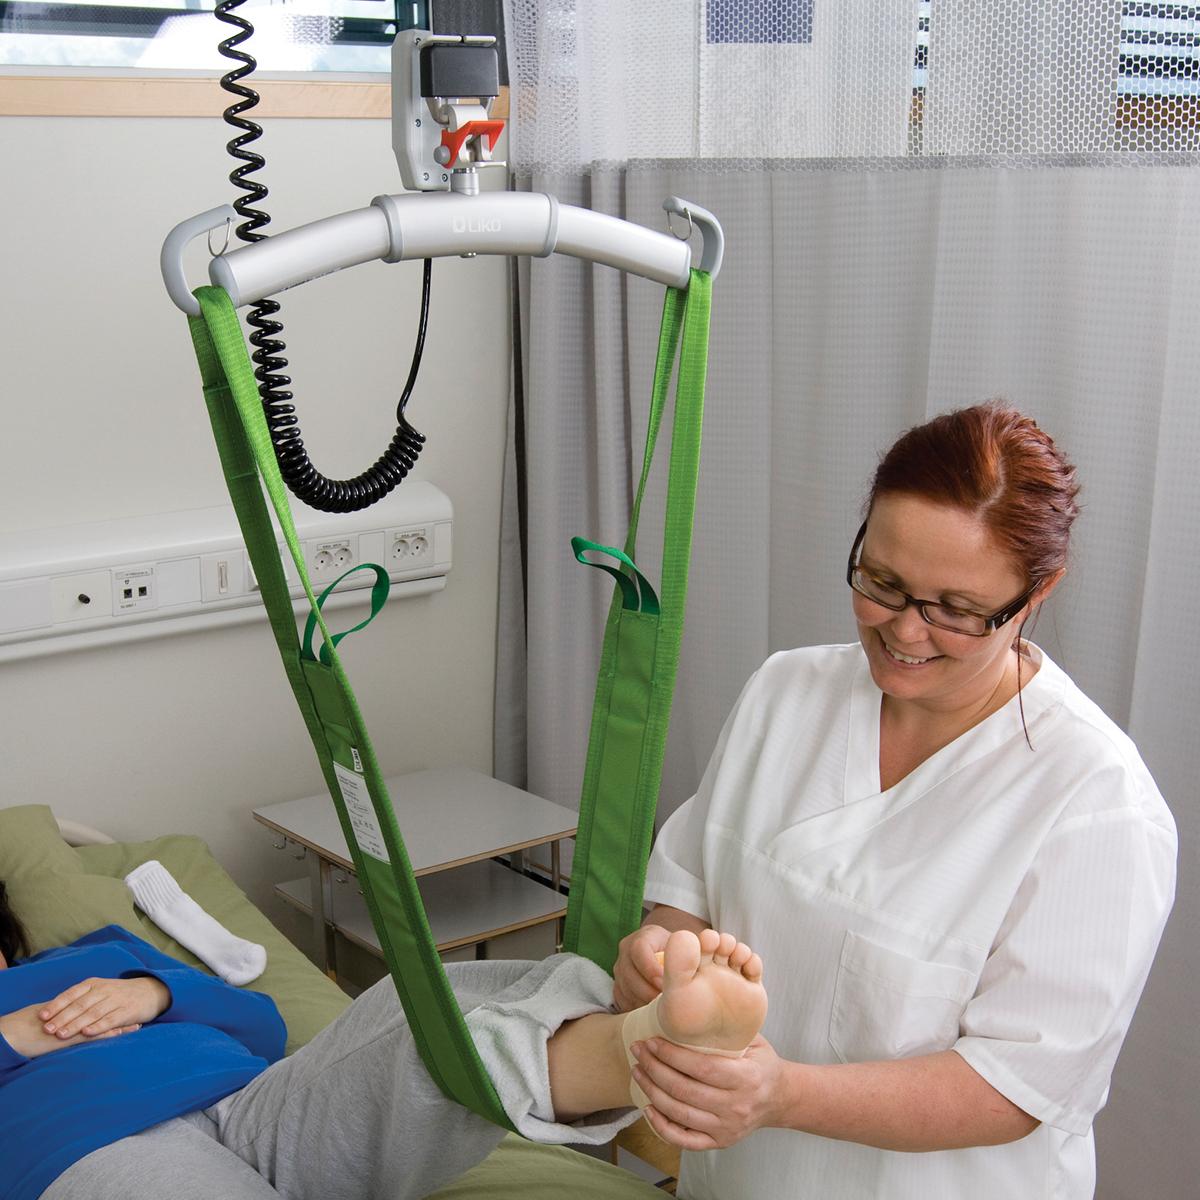 MultiStrap™ Hebehilfsmittel, grün, verwendet am linken Fuß des liegenden Patienten im Gurt, gehalten von einer Klinikmitarbeiterin mit Brille